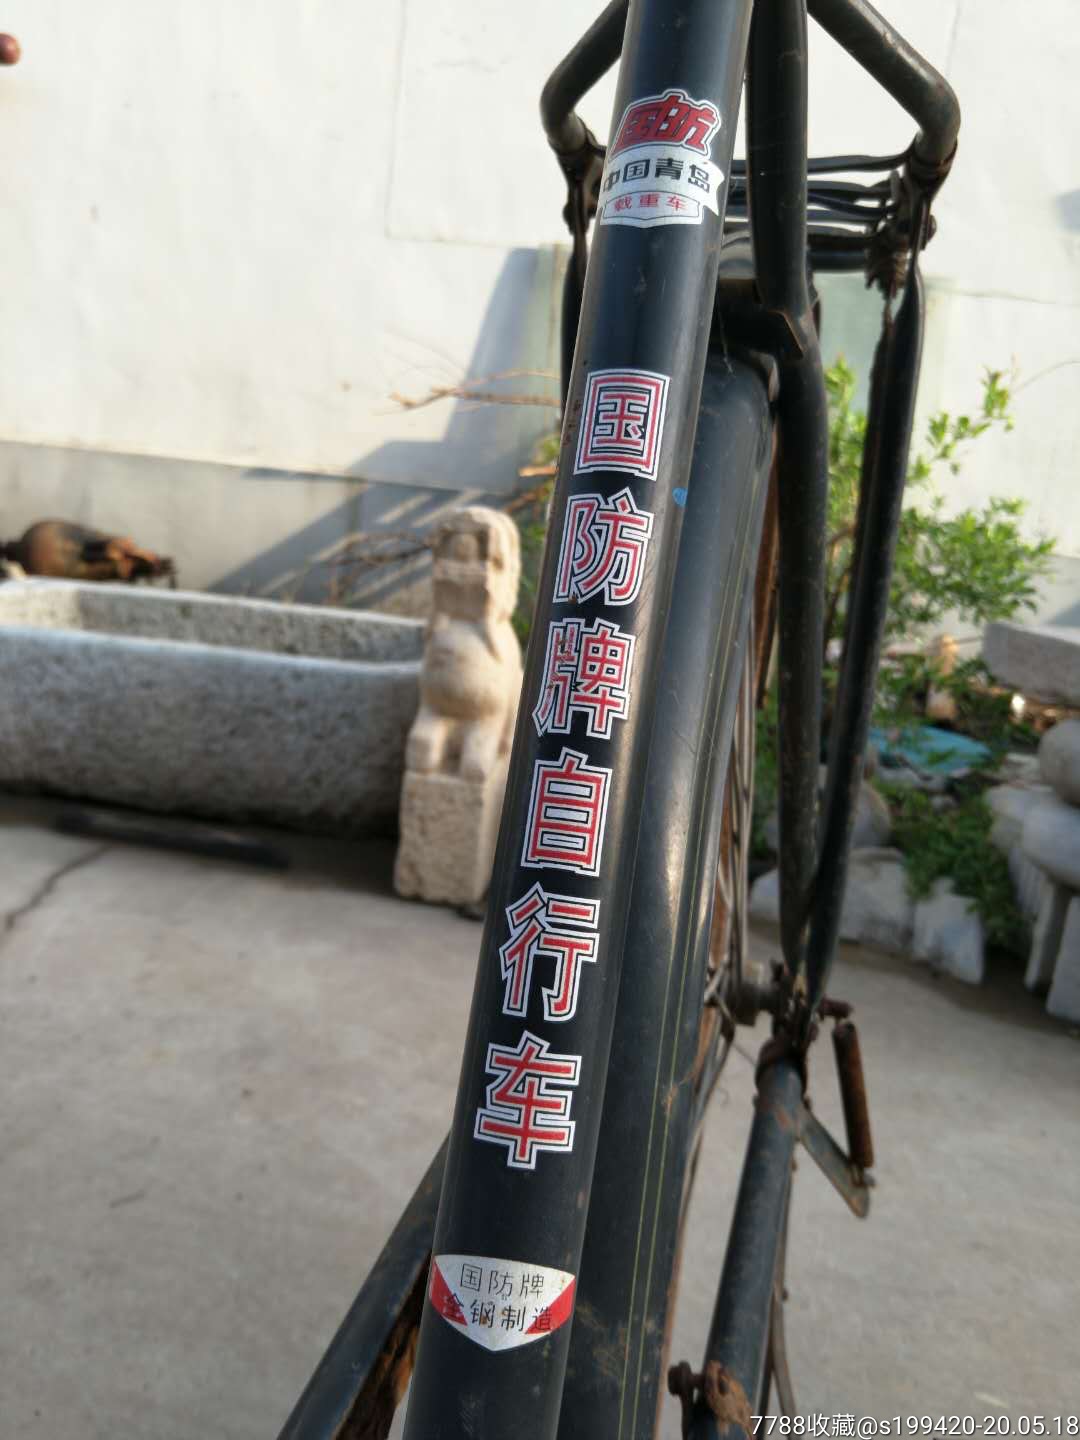 老国防牌自行车邮政专用车品相一流正常使用980元不议价不包邮